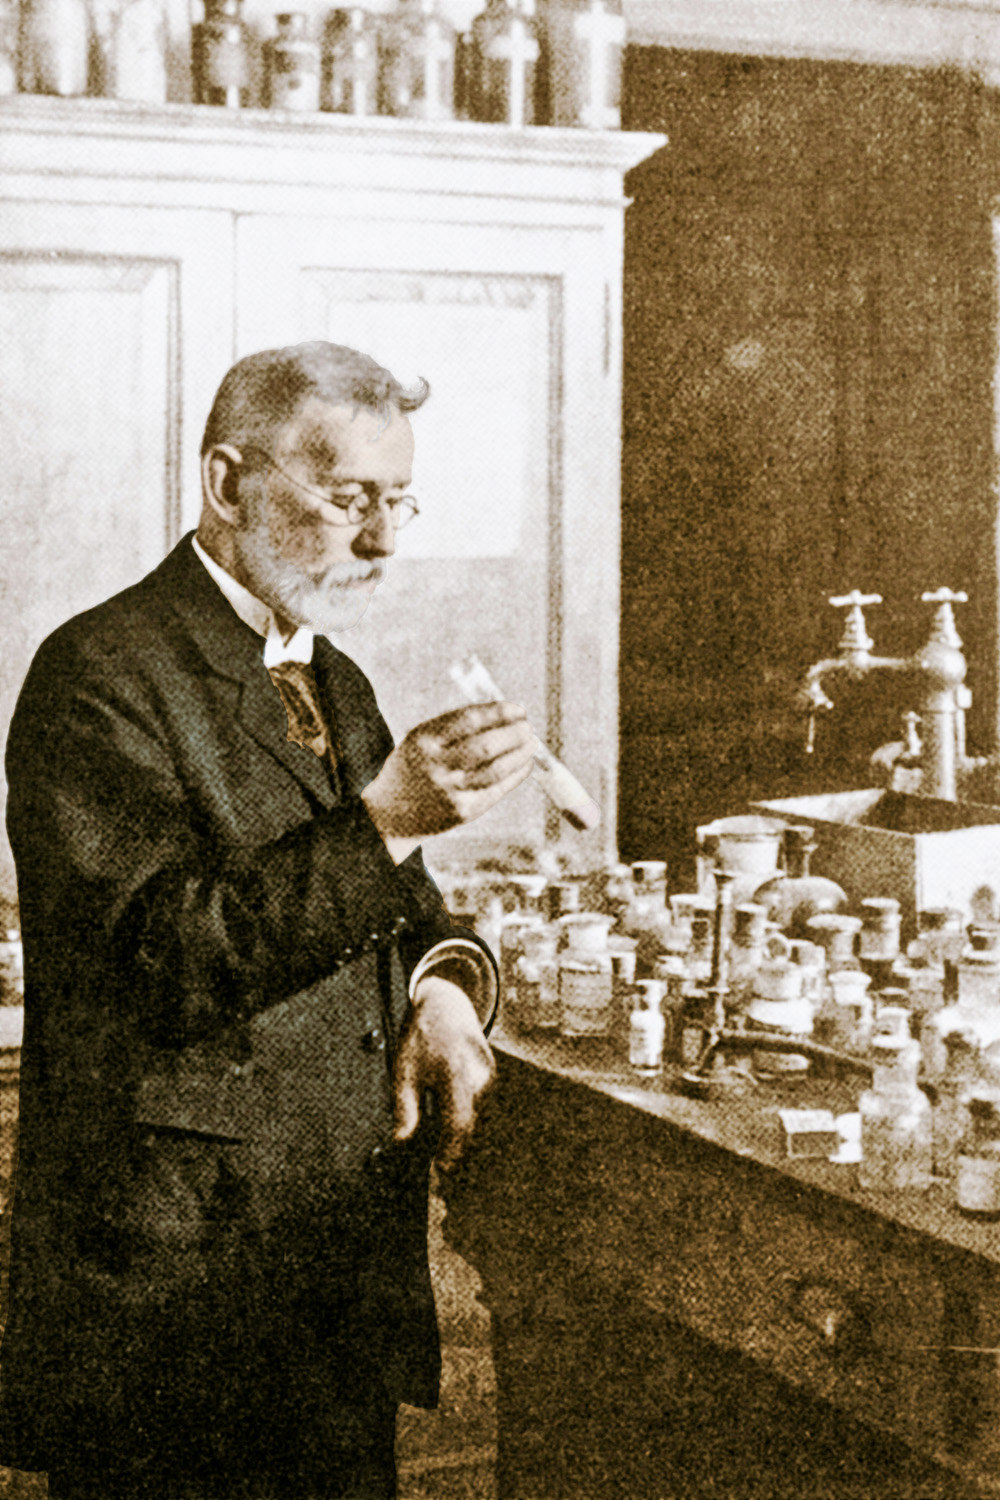 PAI DA QUÍMIO - Paul Ehrlich: prêmio Nobel de Medicina, ele buscava a “bala mágica” que atuaria apenas em células doentes -